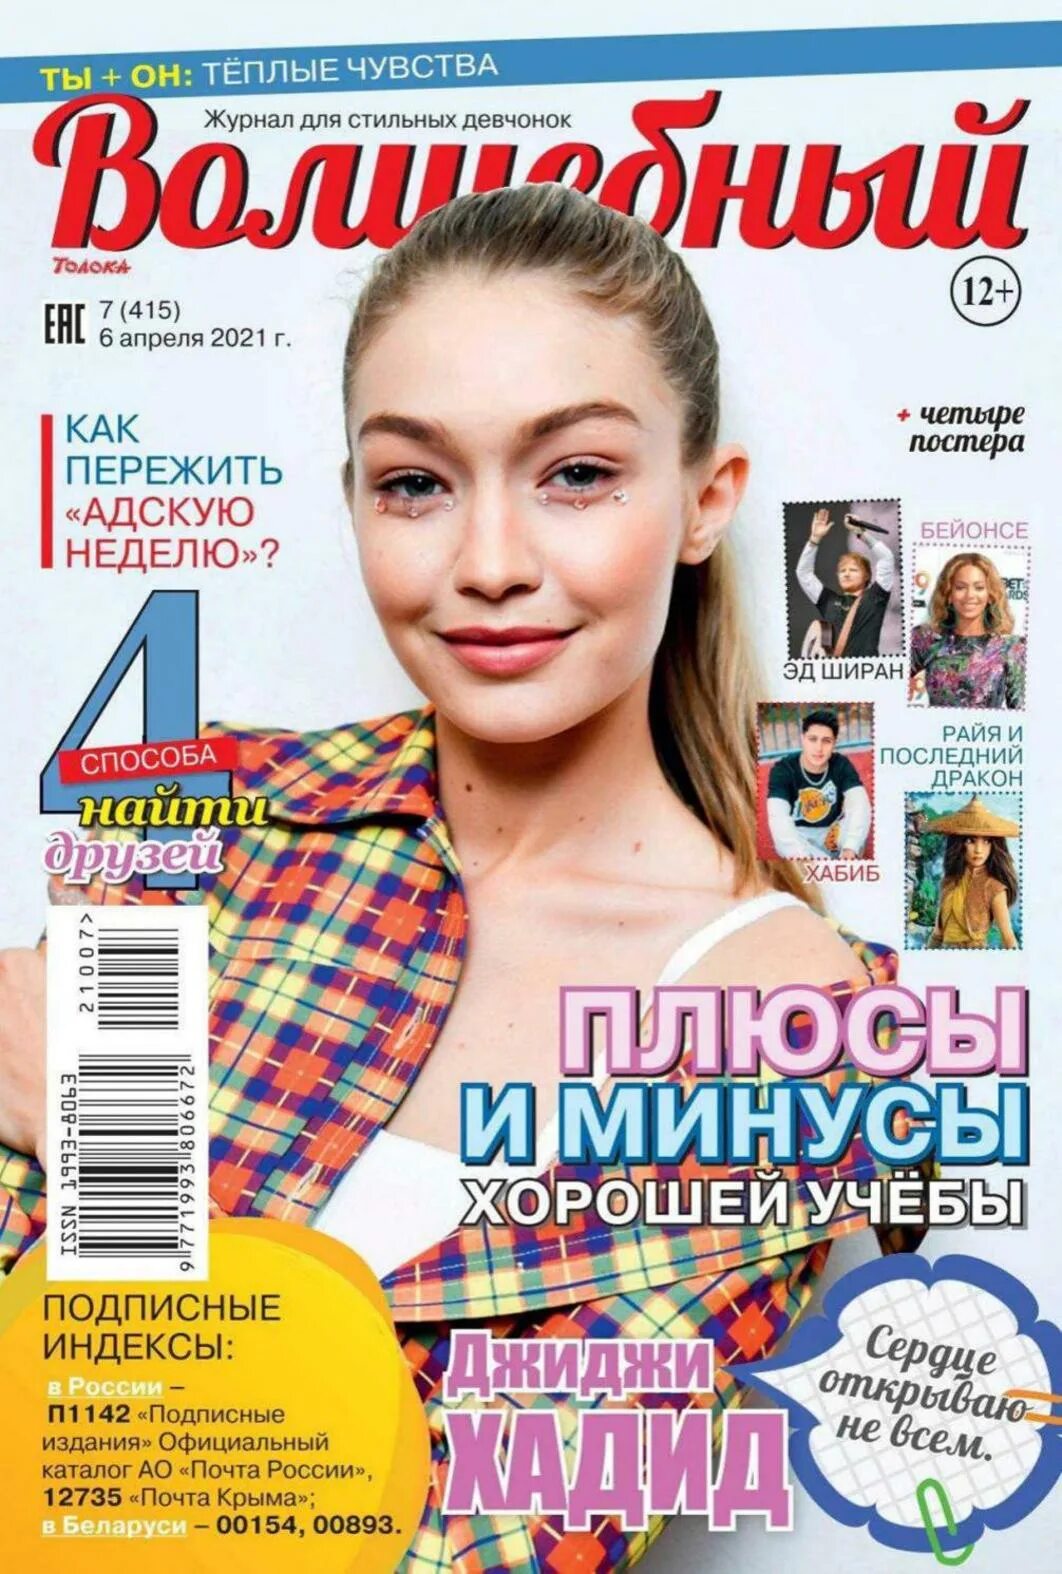 Журнал. Журналы 2021. Журнал Волшебный. Обложка журнала Волшебный.